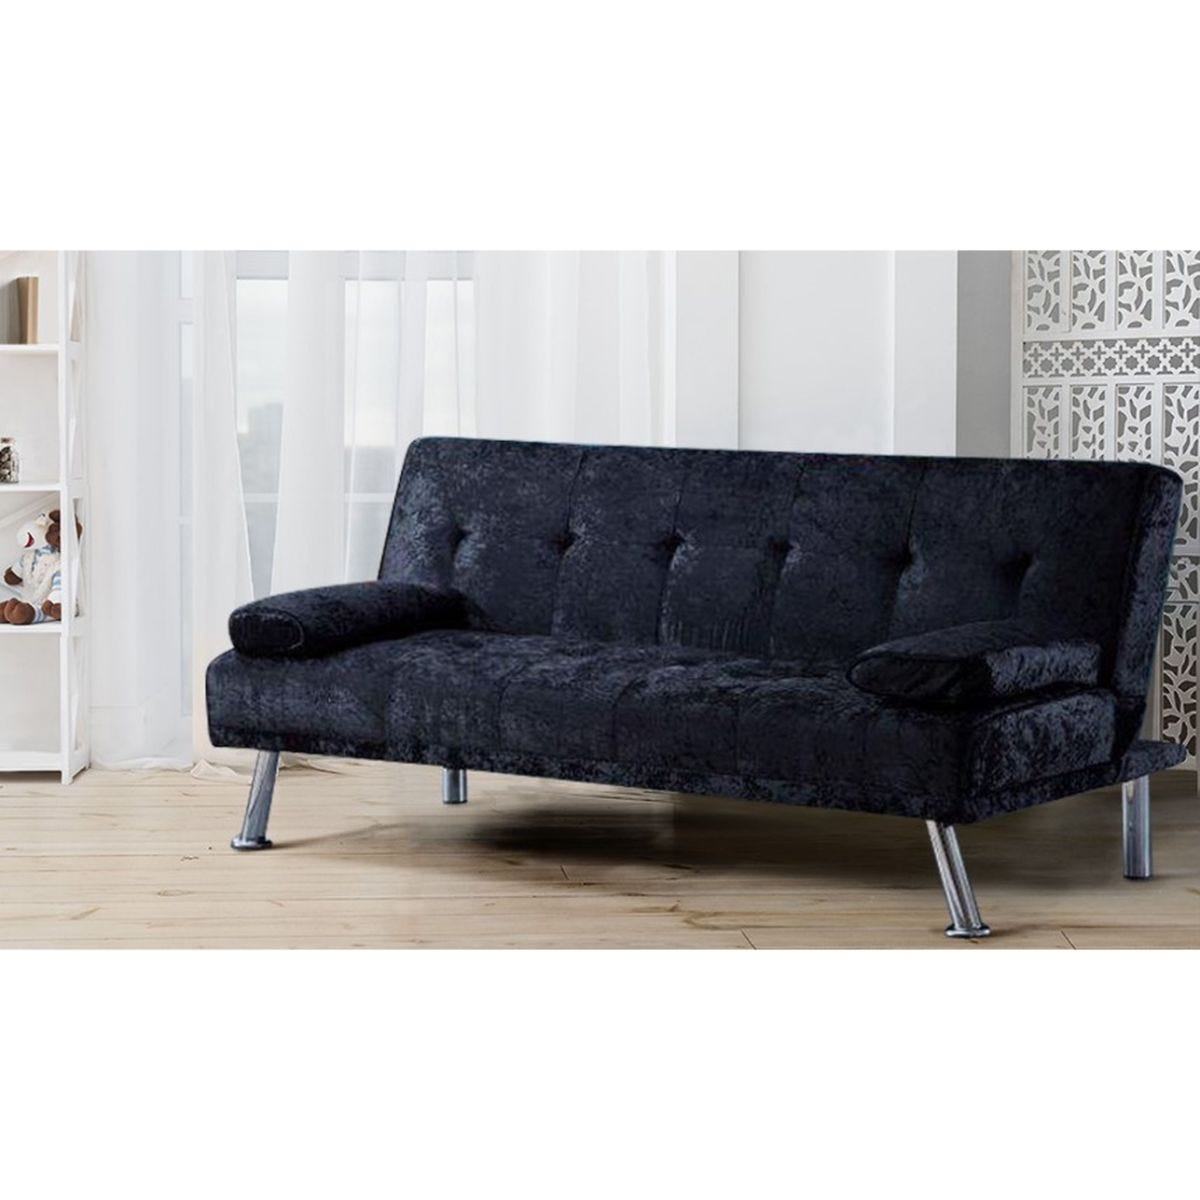 SleepOn Stunning Crushed Velvet Italian Designer Style Sofa Bed With Chrome Legs Black